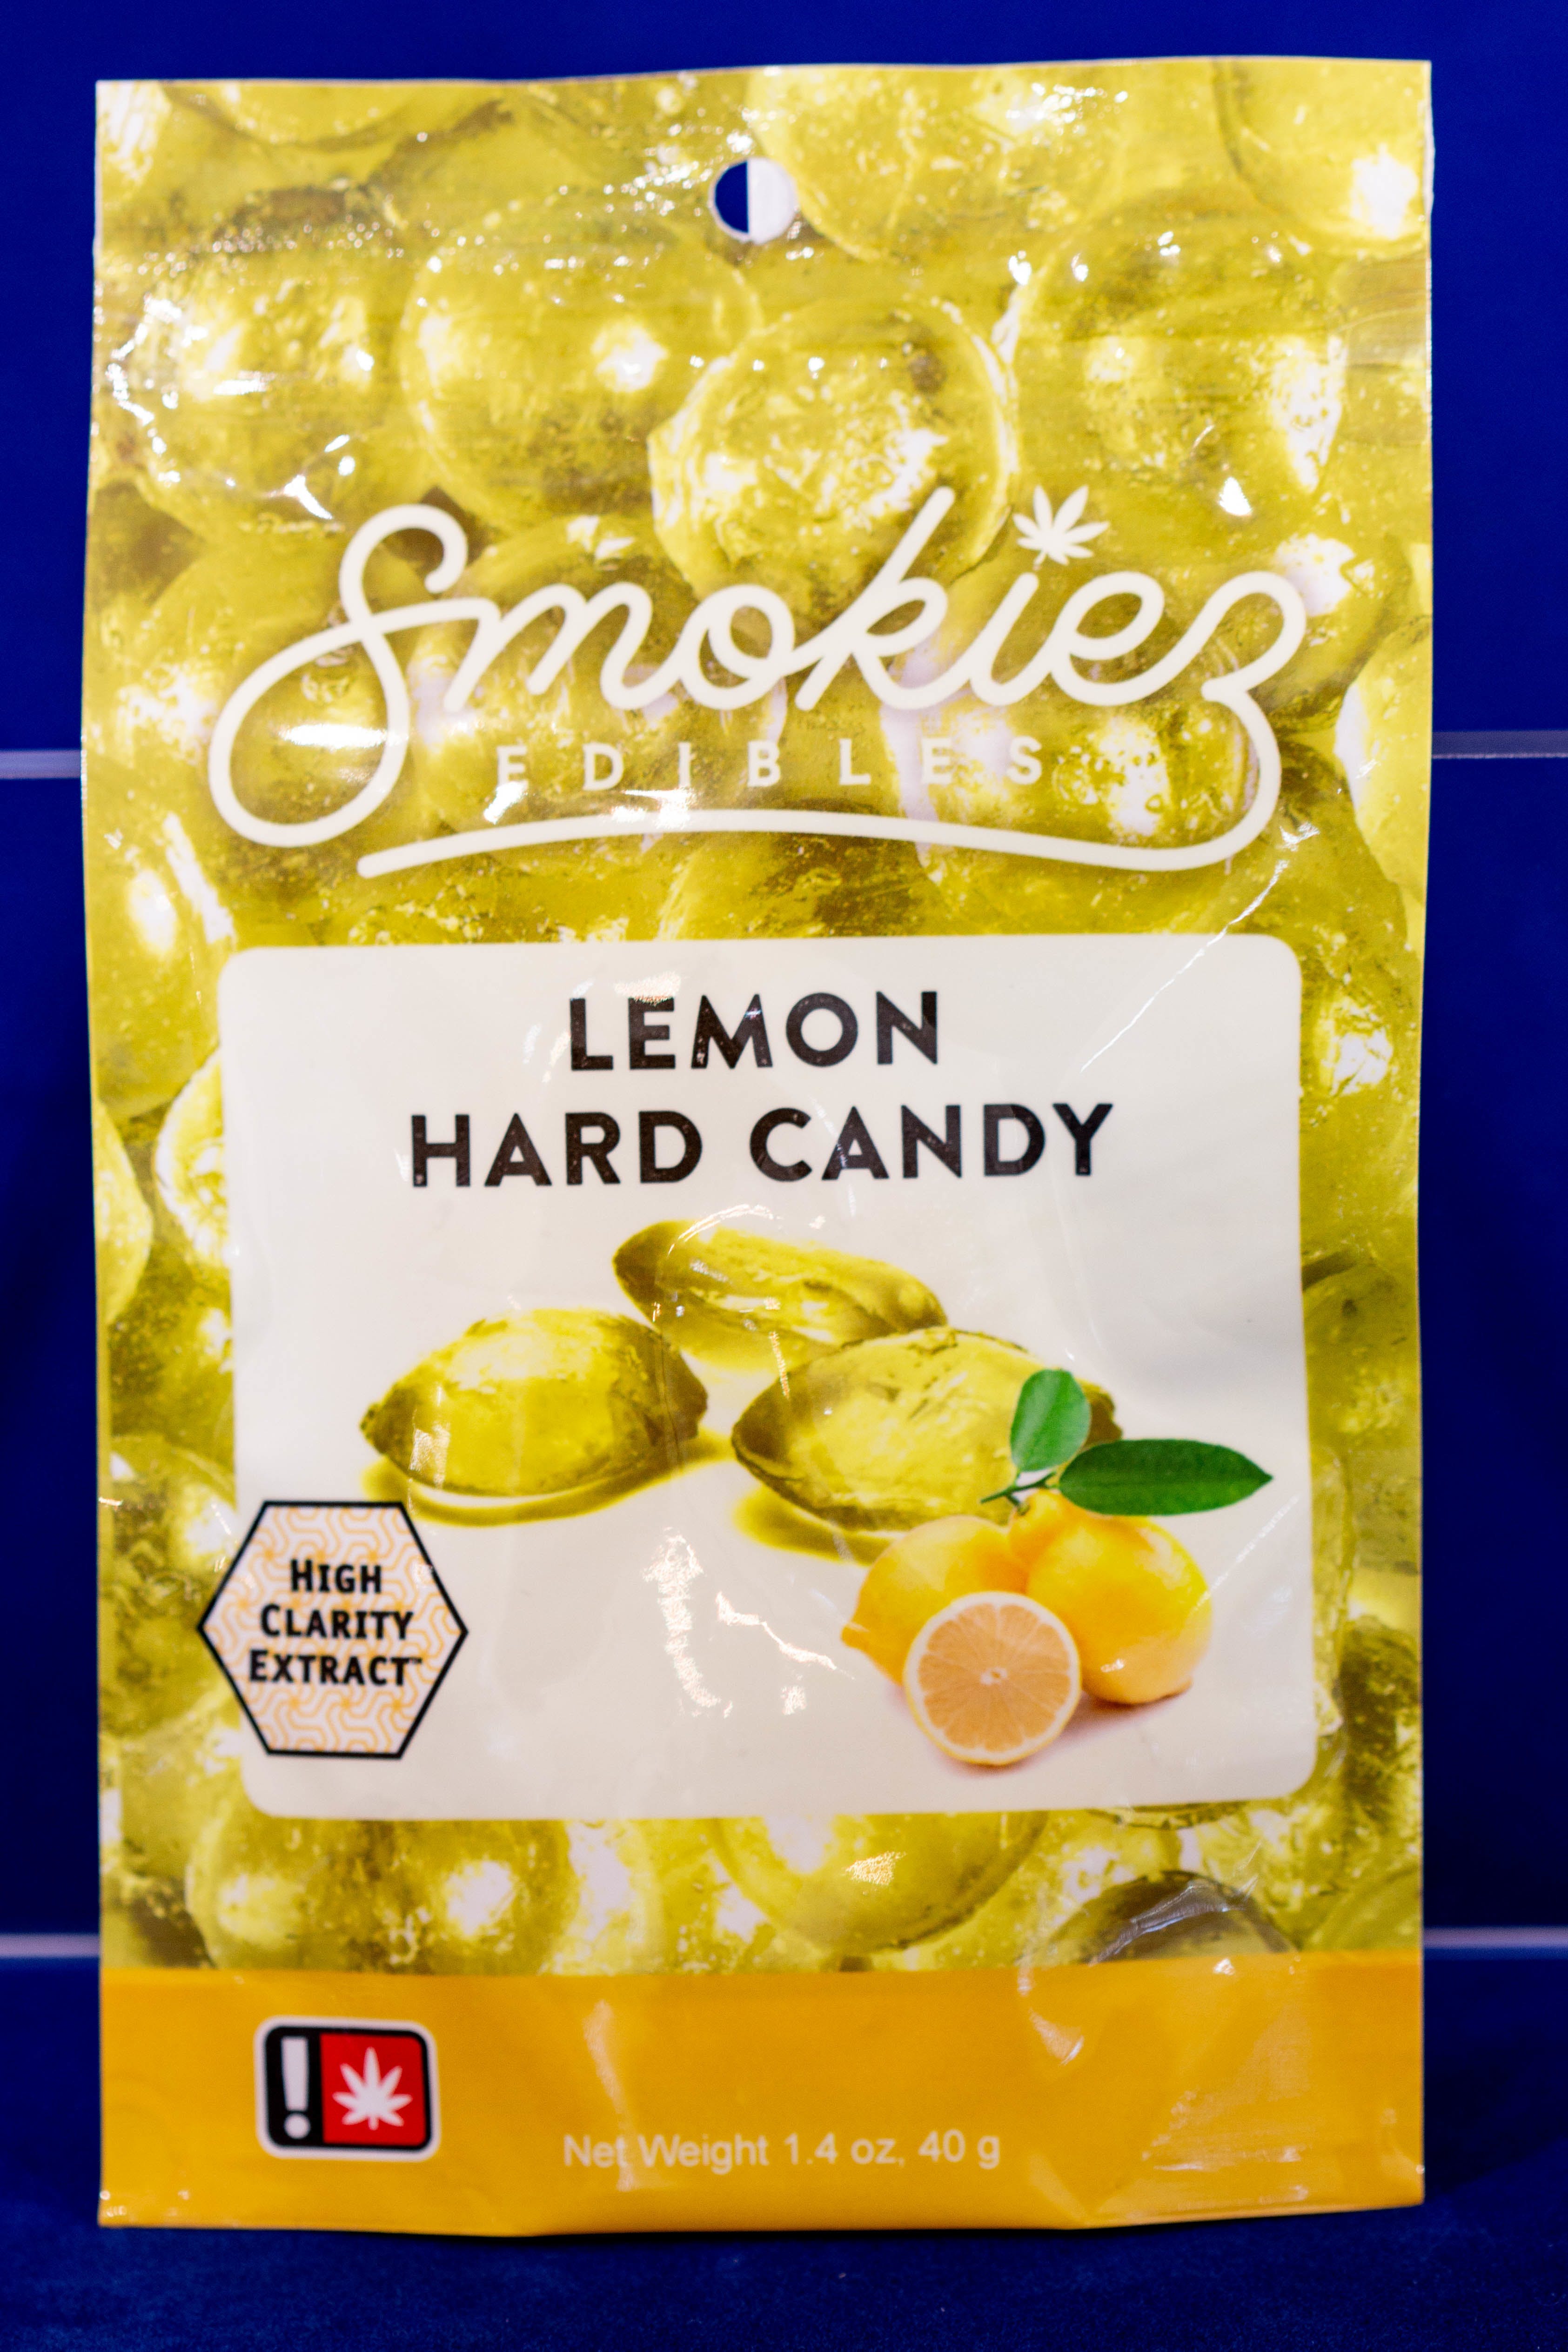 edible-lemon-hard-candy-by-smokiez